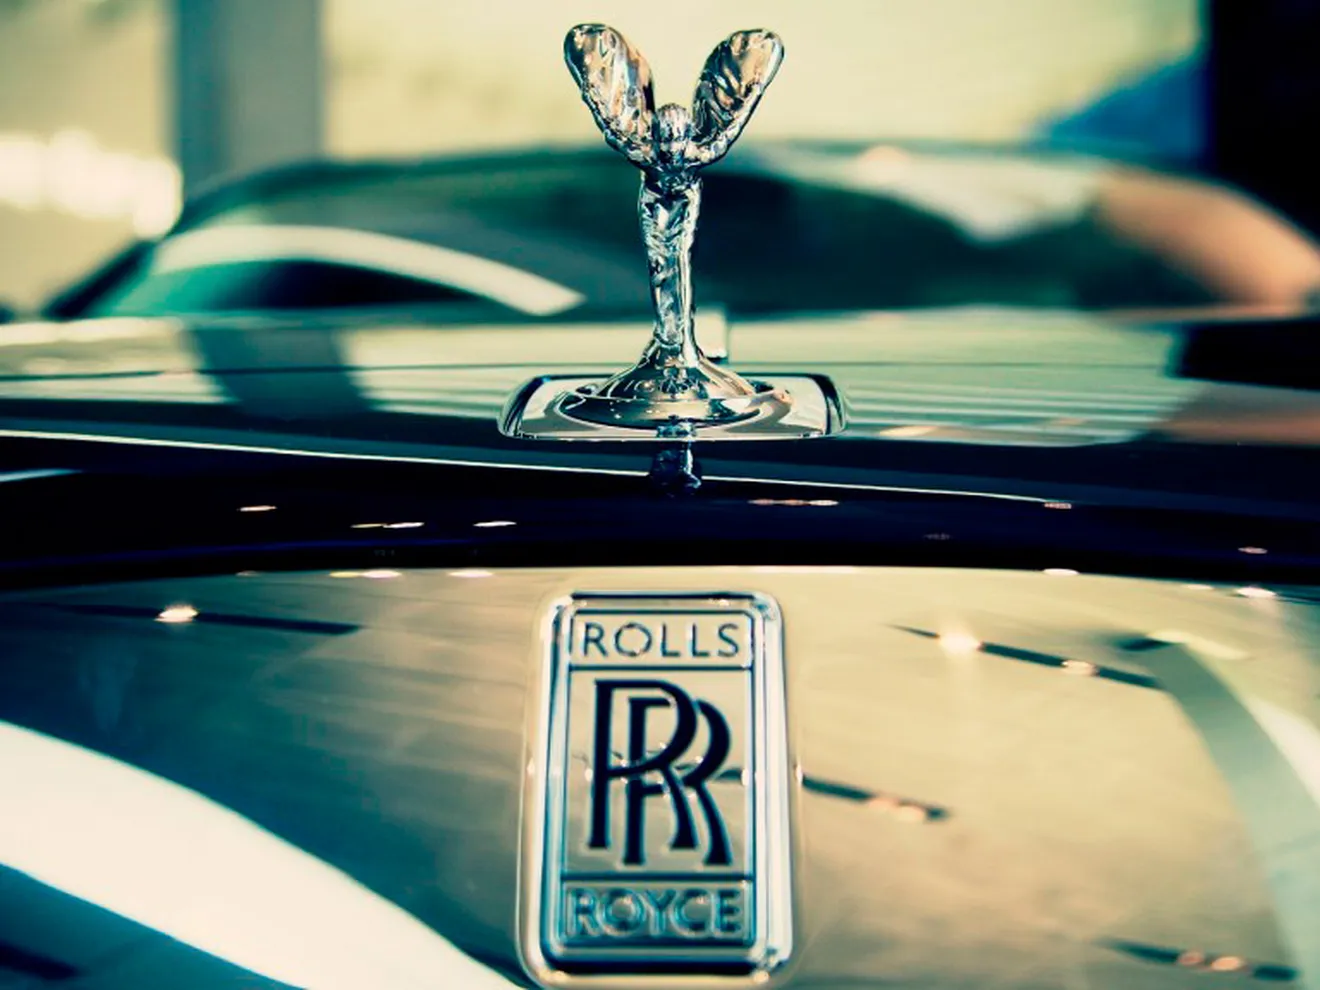 2015, el año decisivo para la fabricación del SUV de Rolls Royce